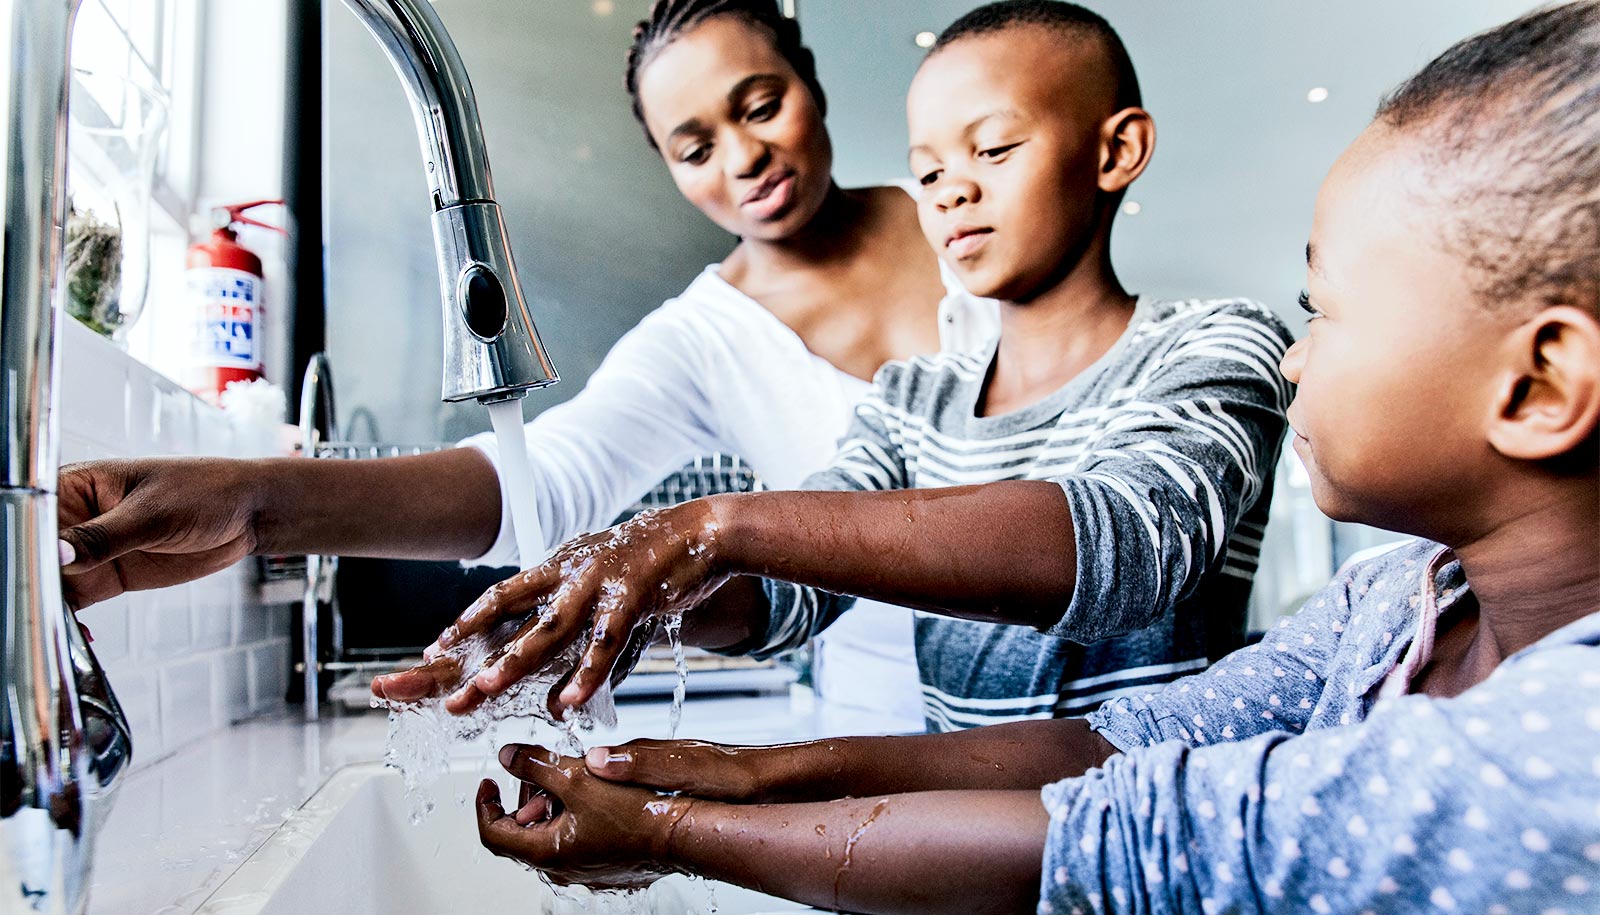 The children have washed. Семья моет руки. Мытье рук для детей. Мытье рук дети 12 лет.